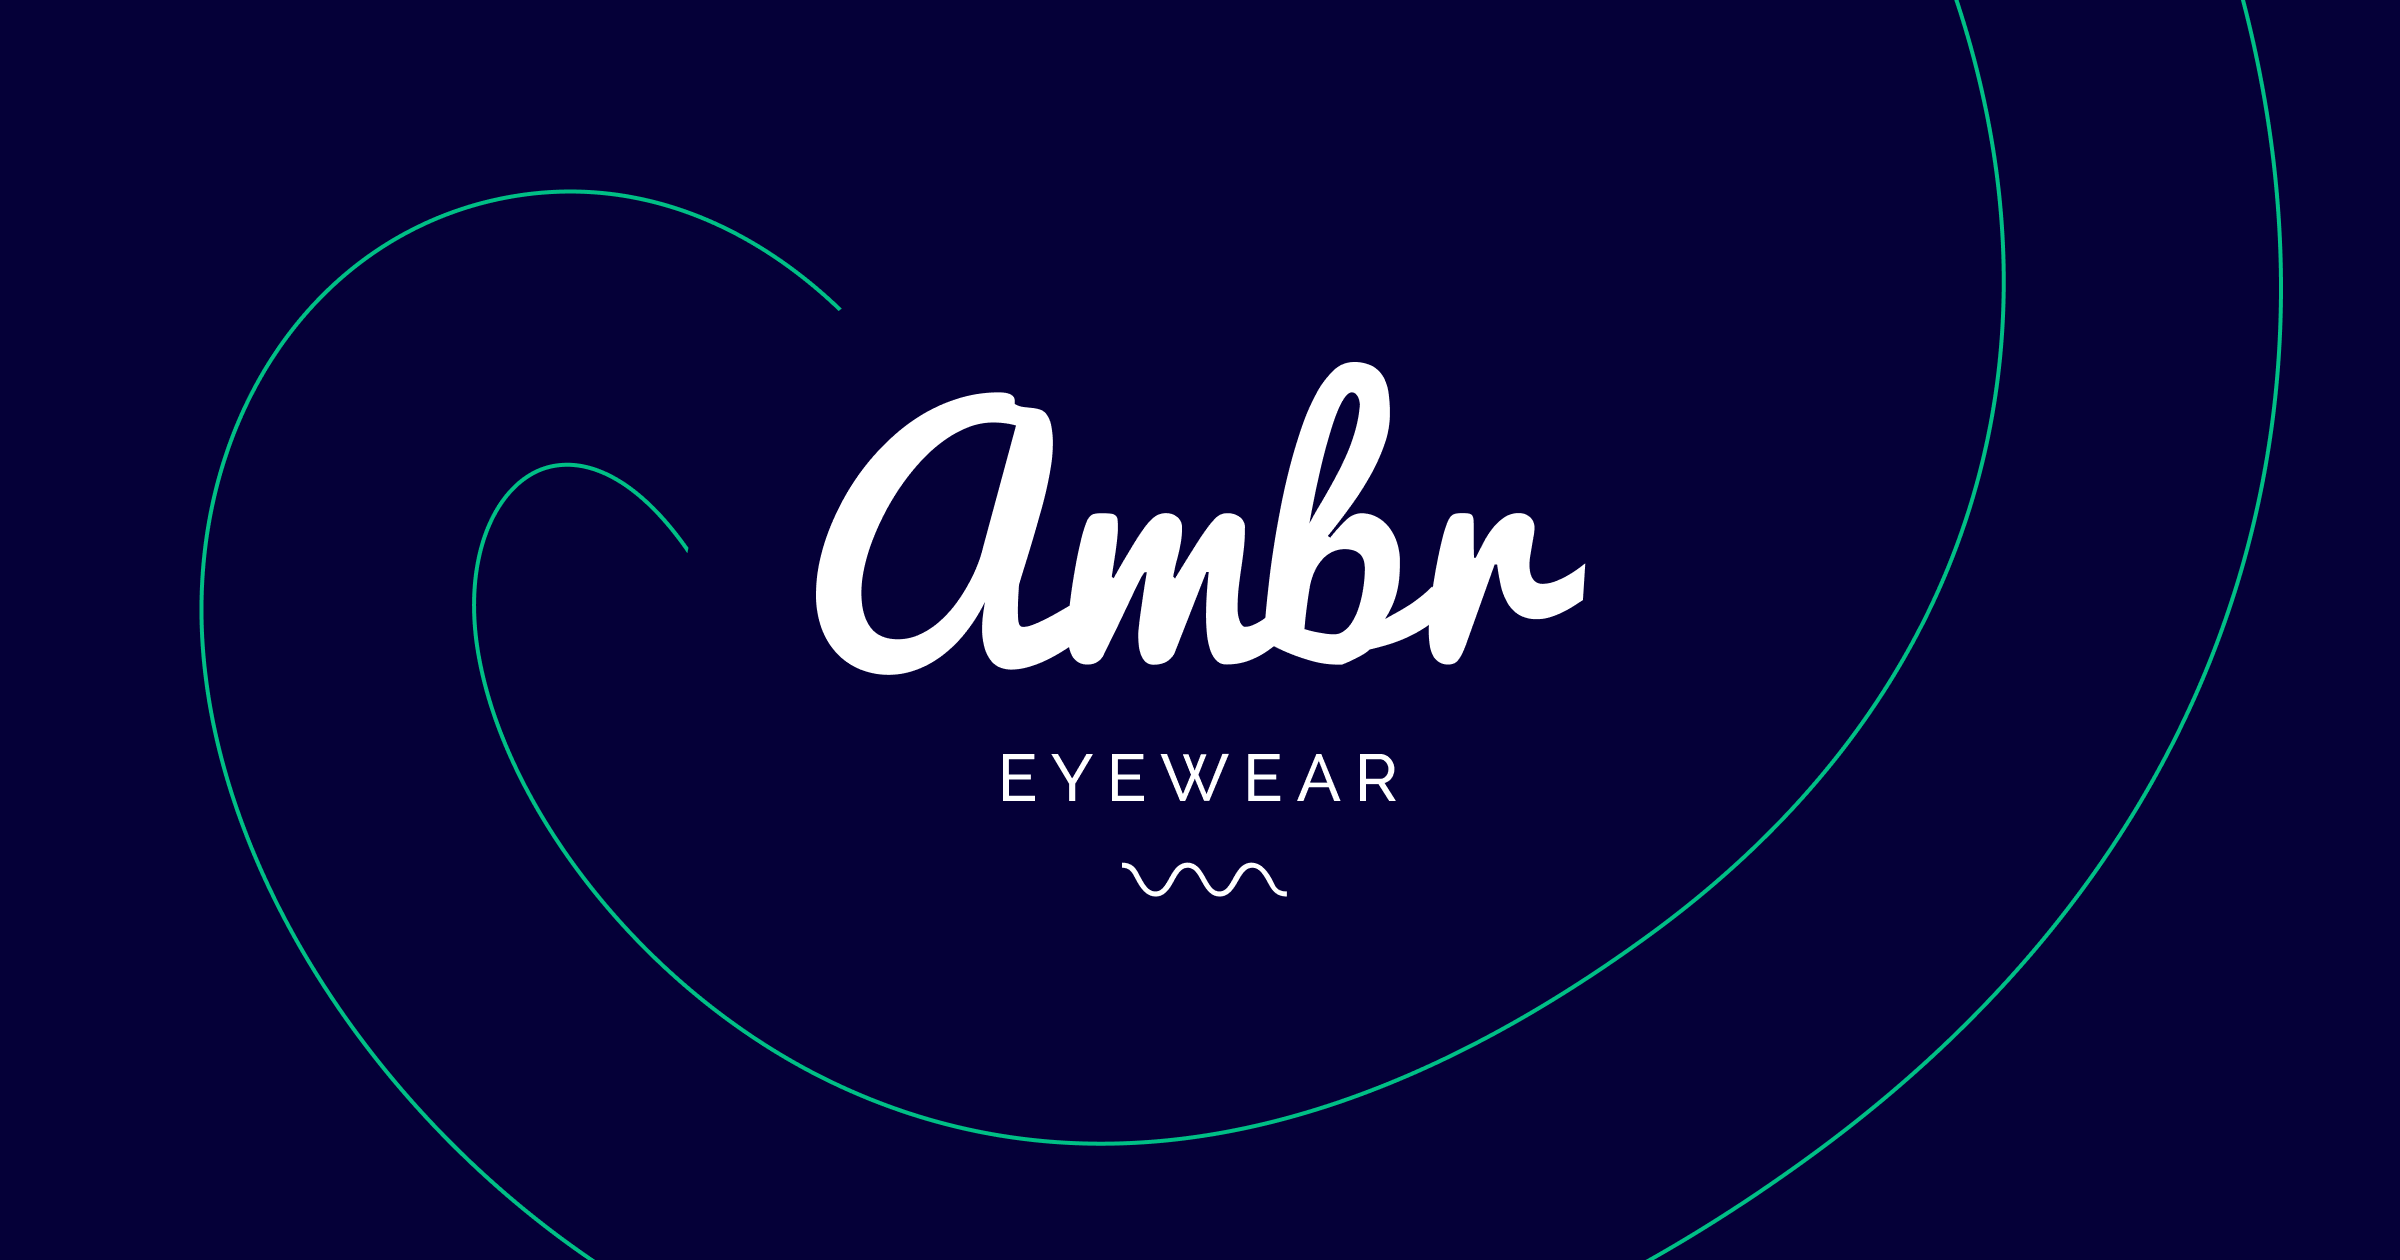 Cómo Ambr Eyewear hizo despegar una marca con sus propios medios